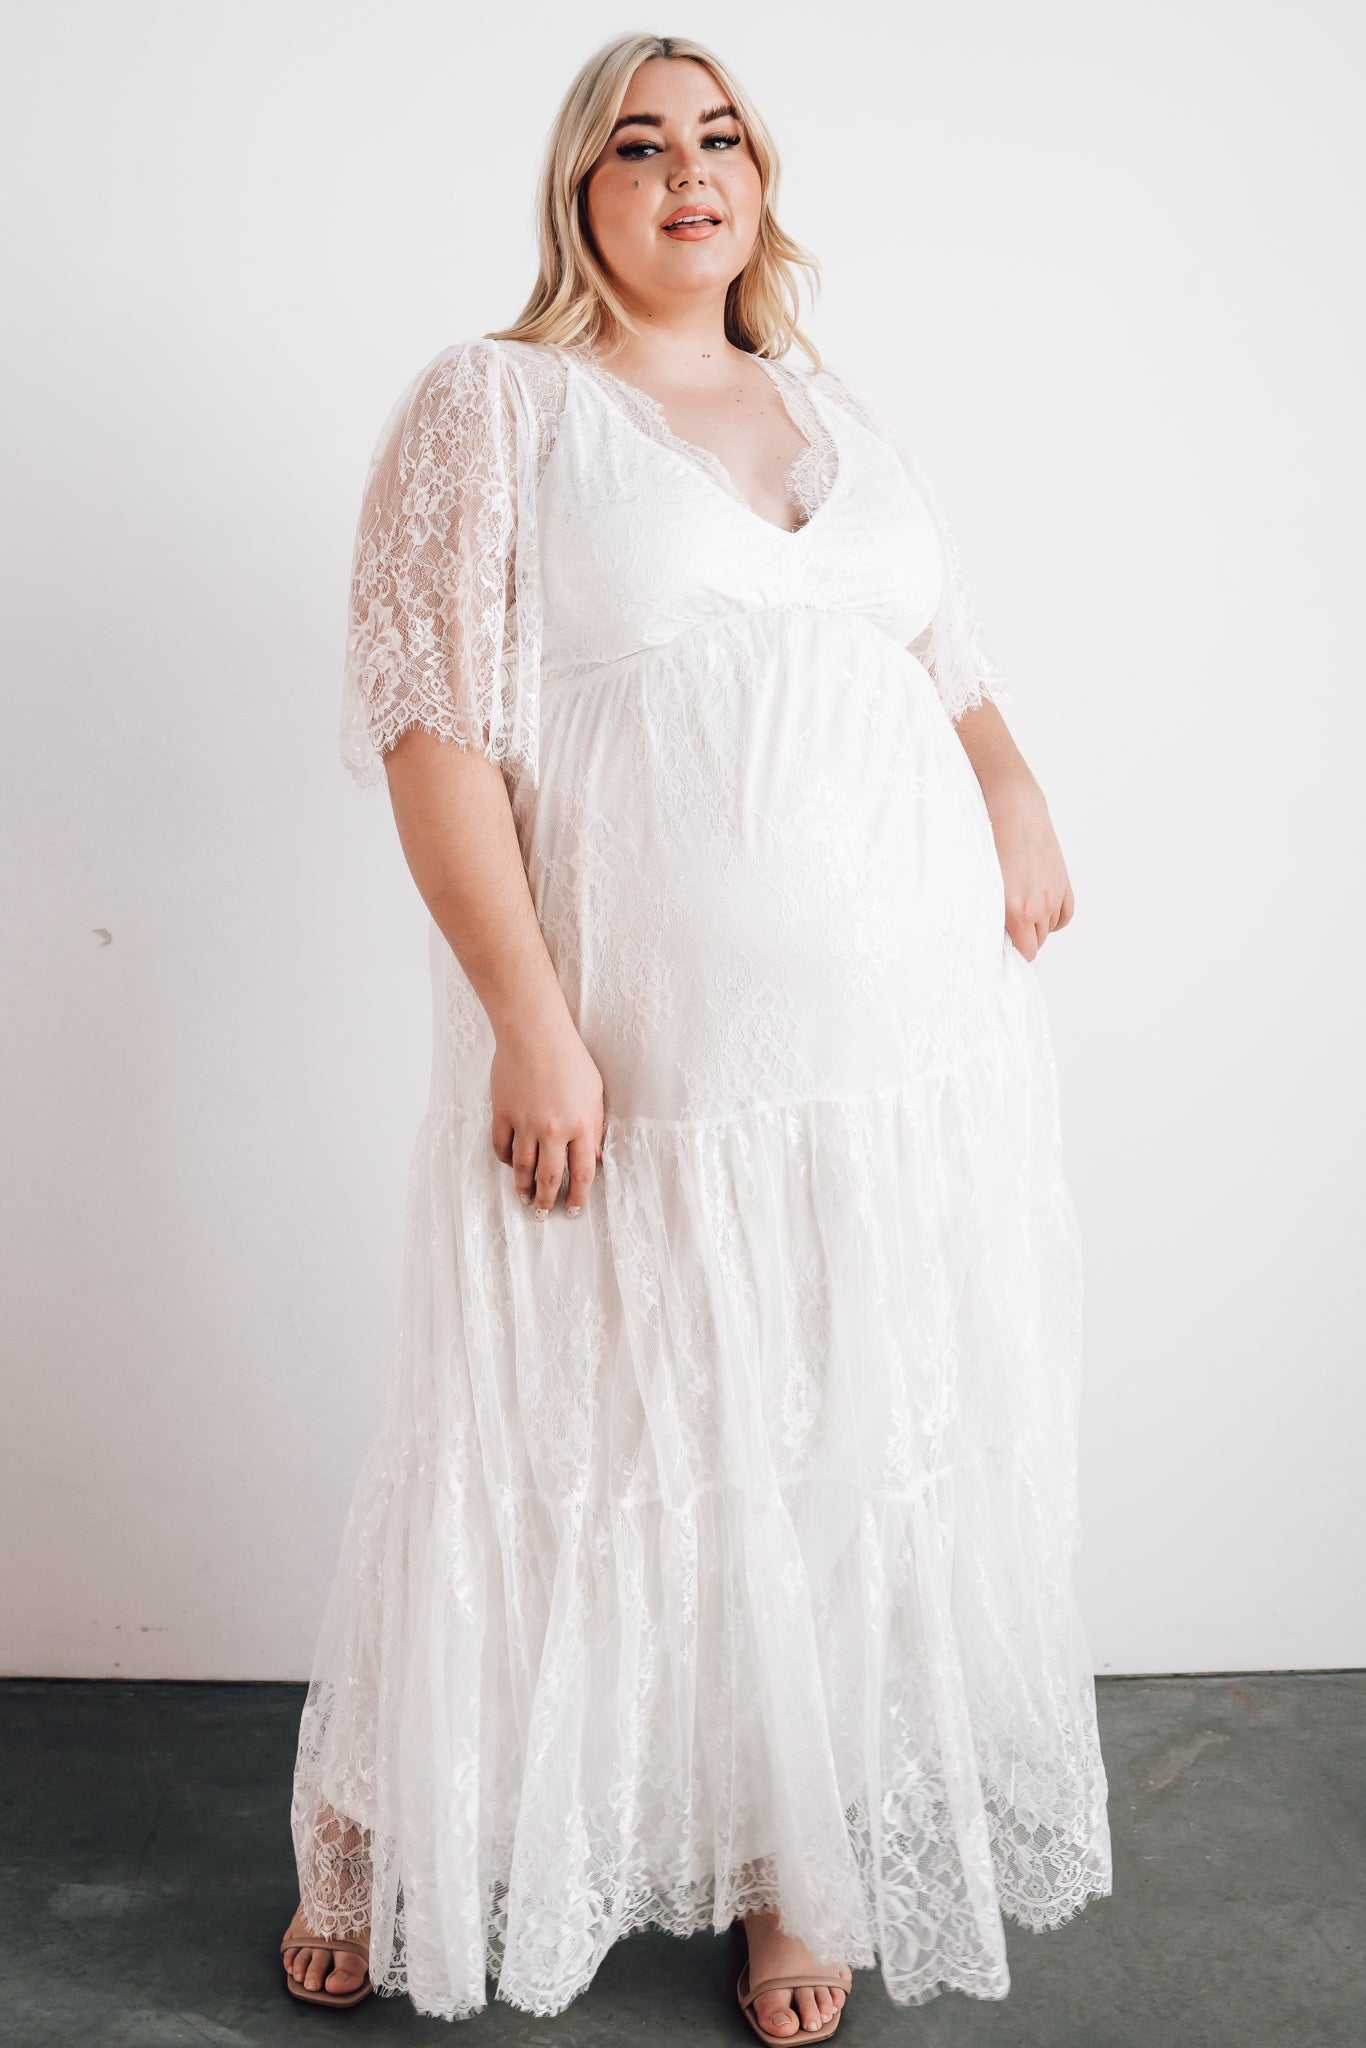 Lace Bralette Top Maxi Dress WHITE – Maxi Laine's Boutique